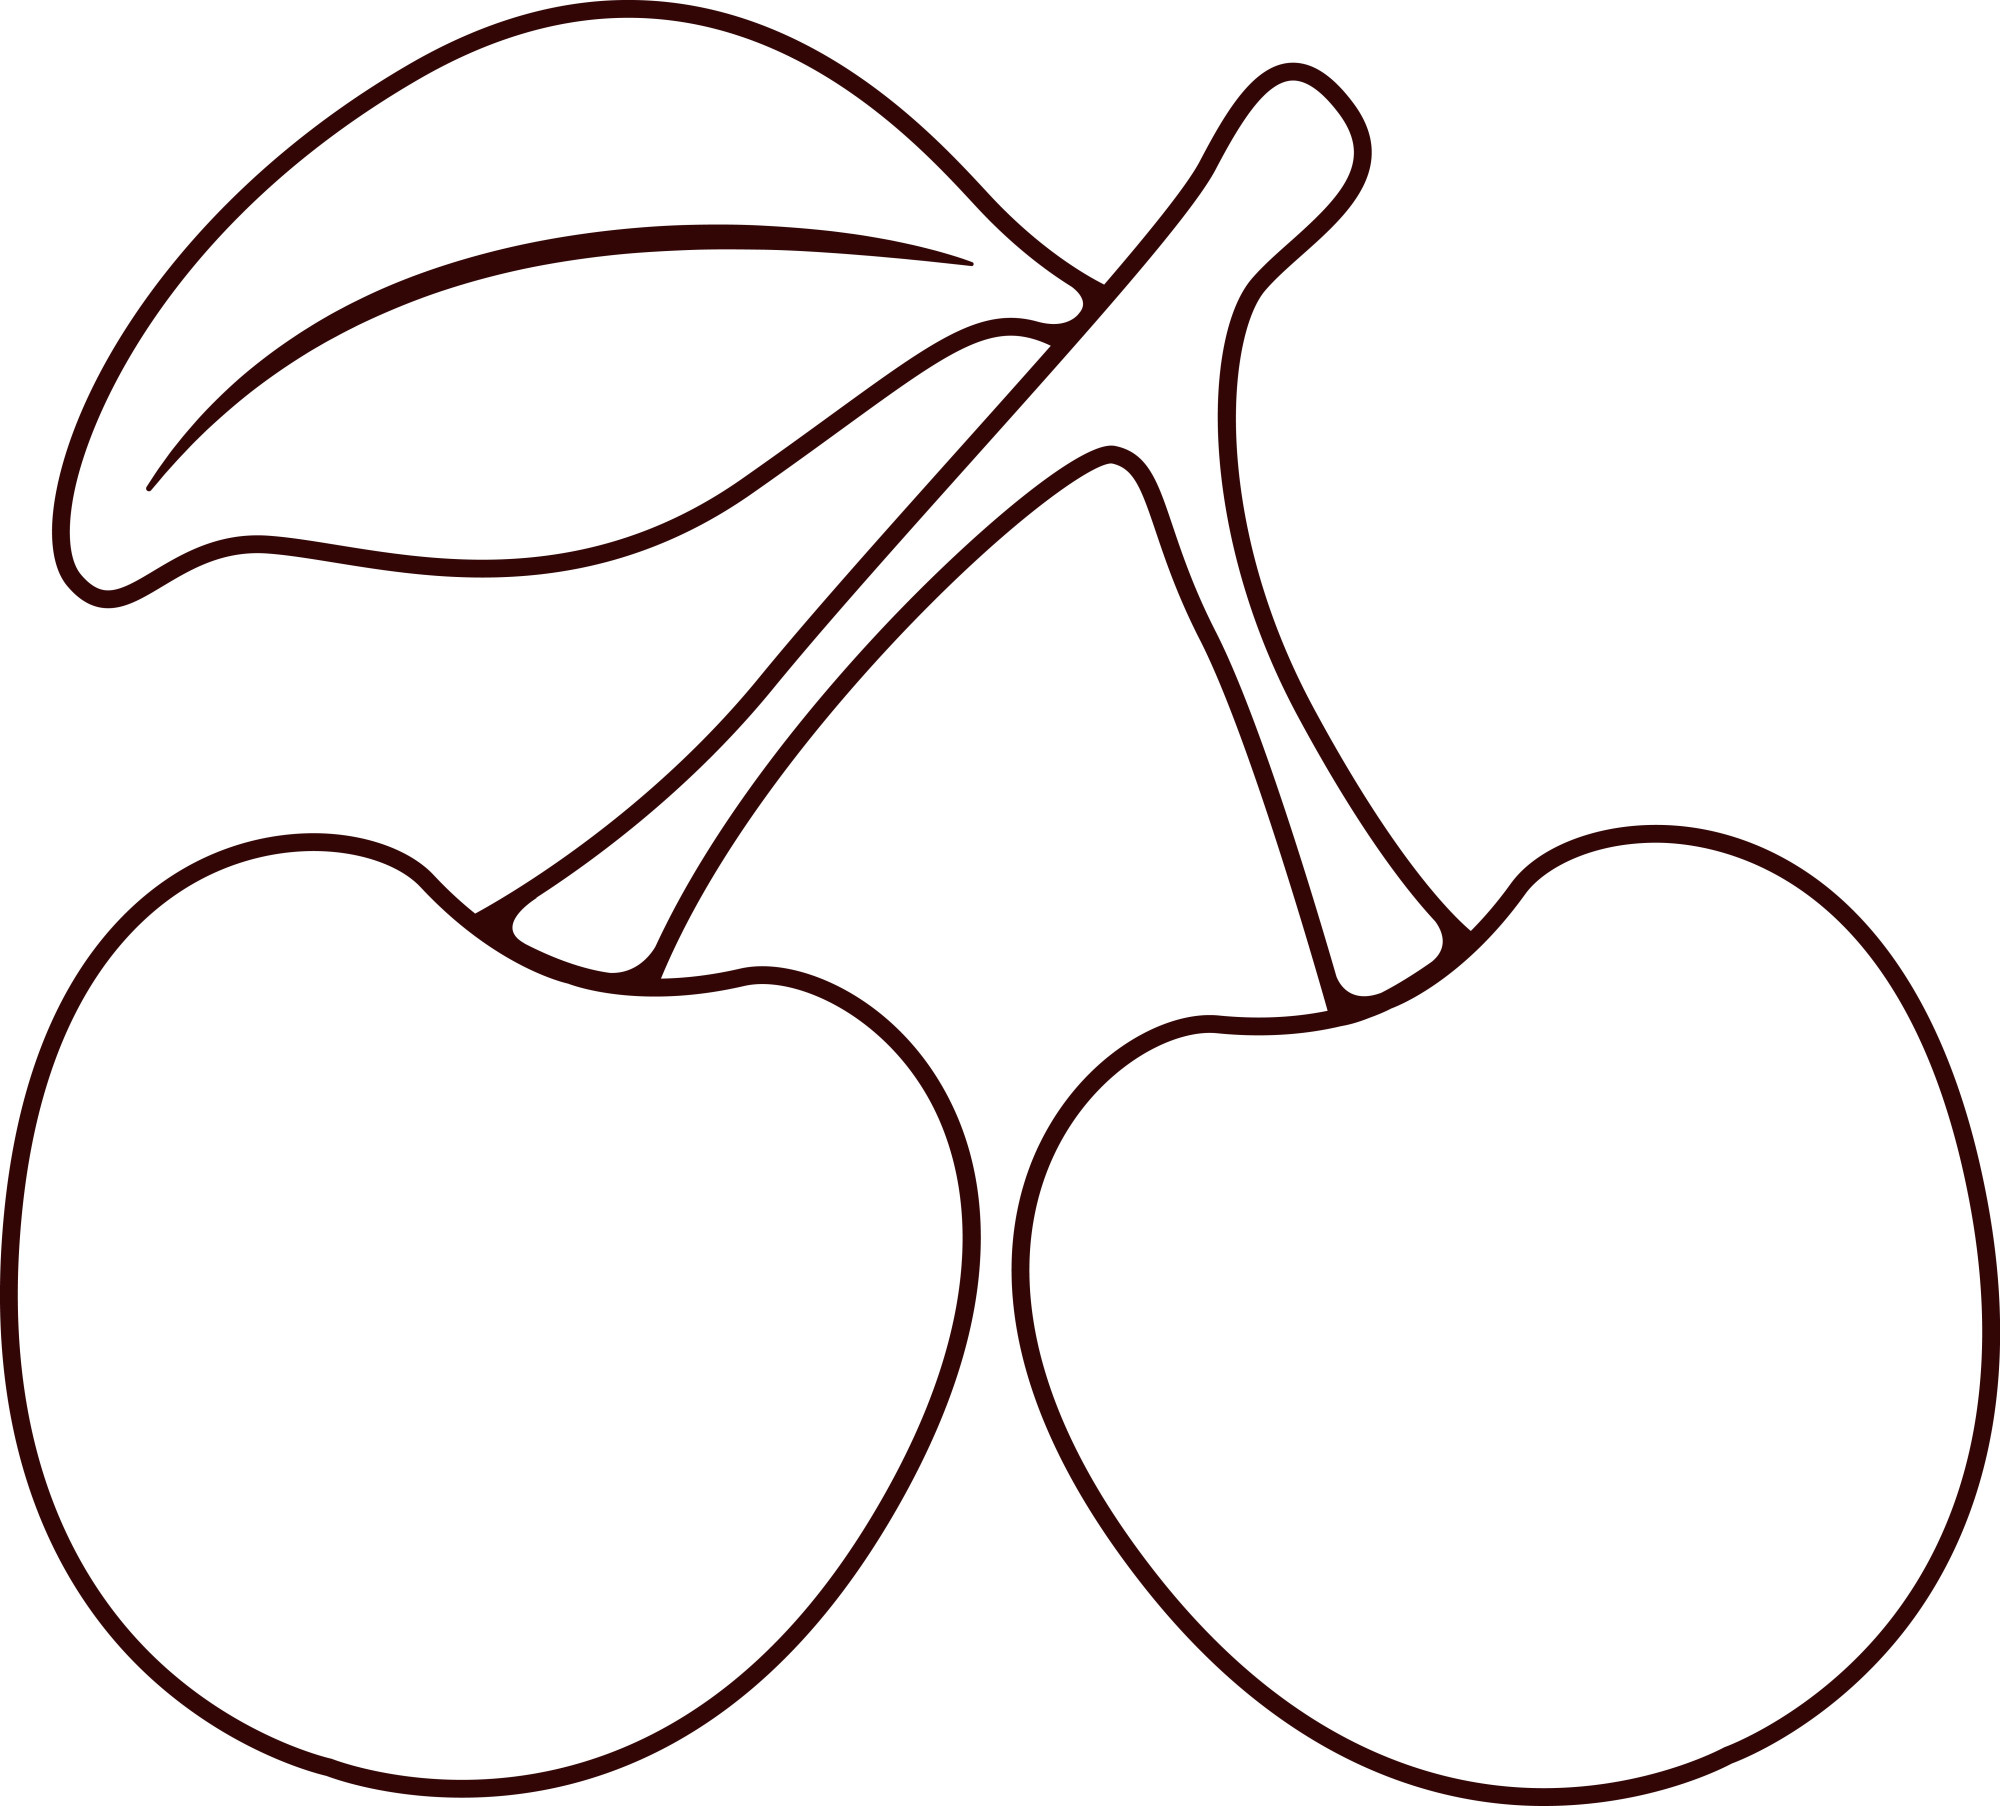 Раскраска для детей: две ягоды вишни с листом